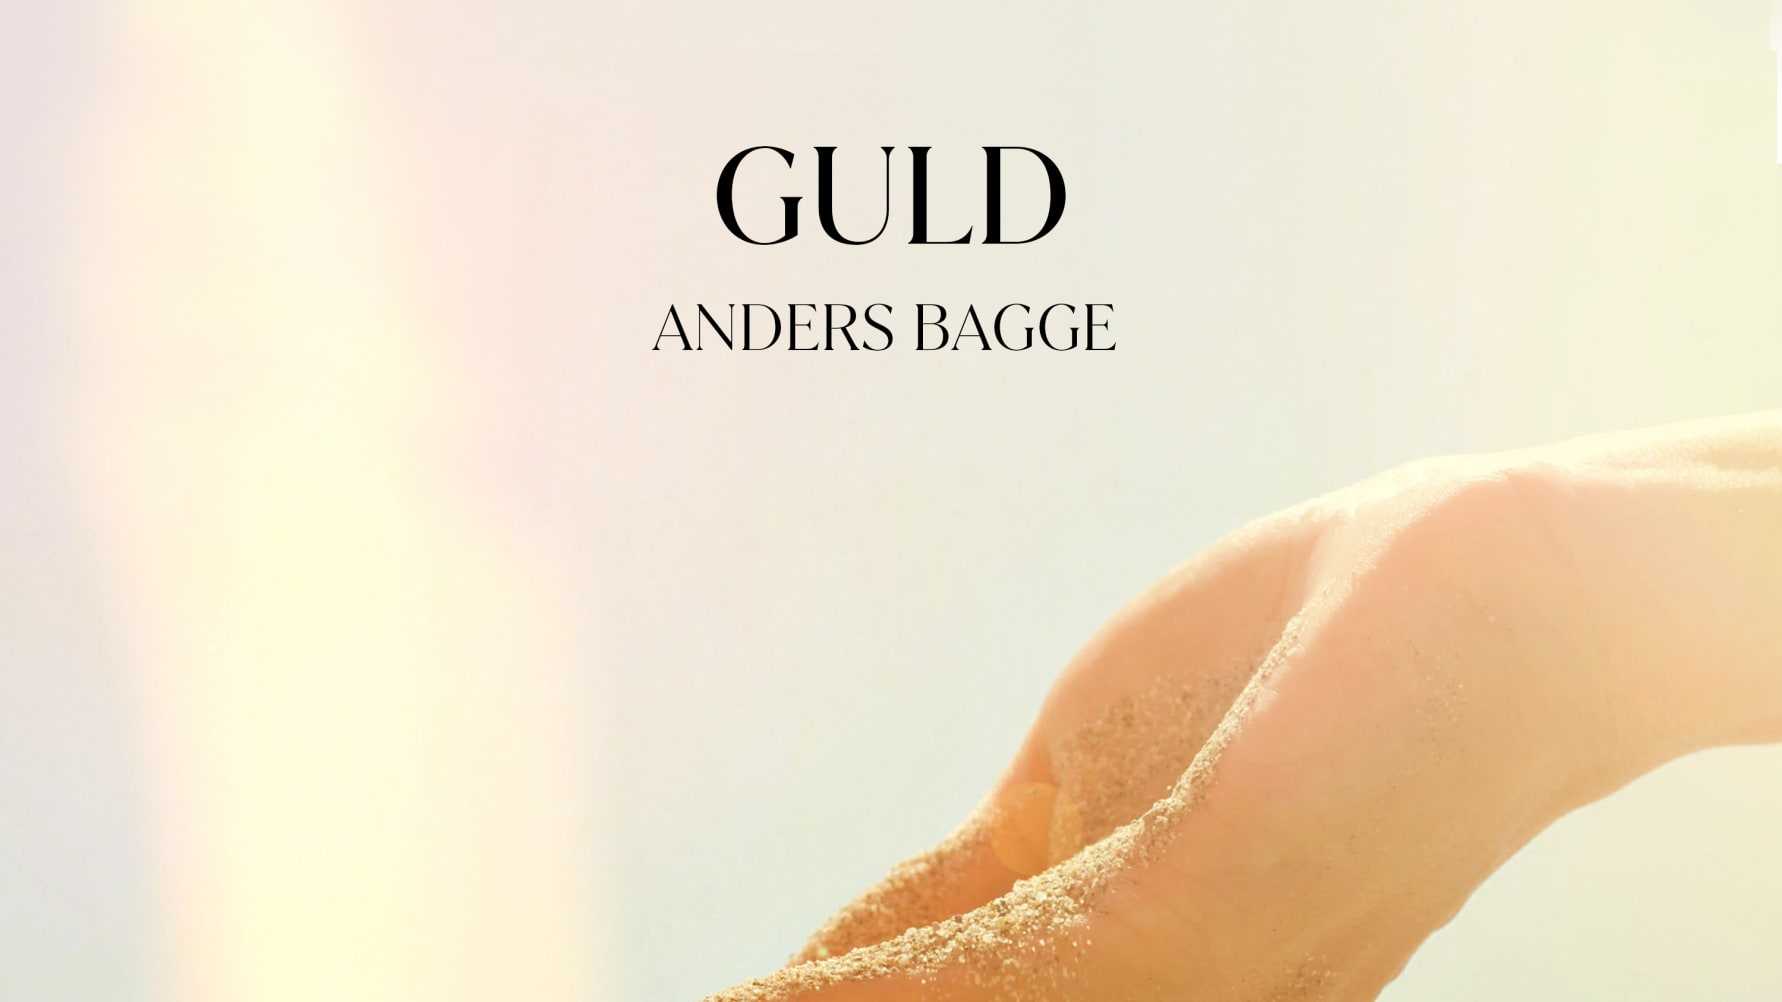 Låten ”Guld” med Anders Bagge släpps idag till förmån för ALS forskning